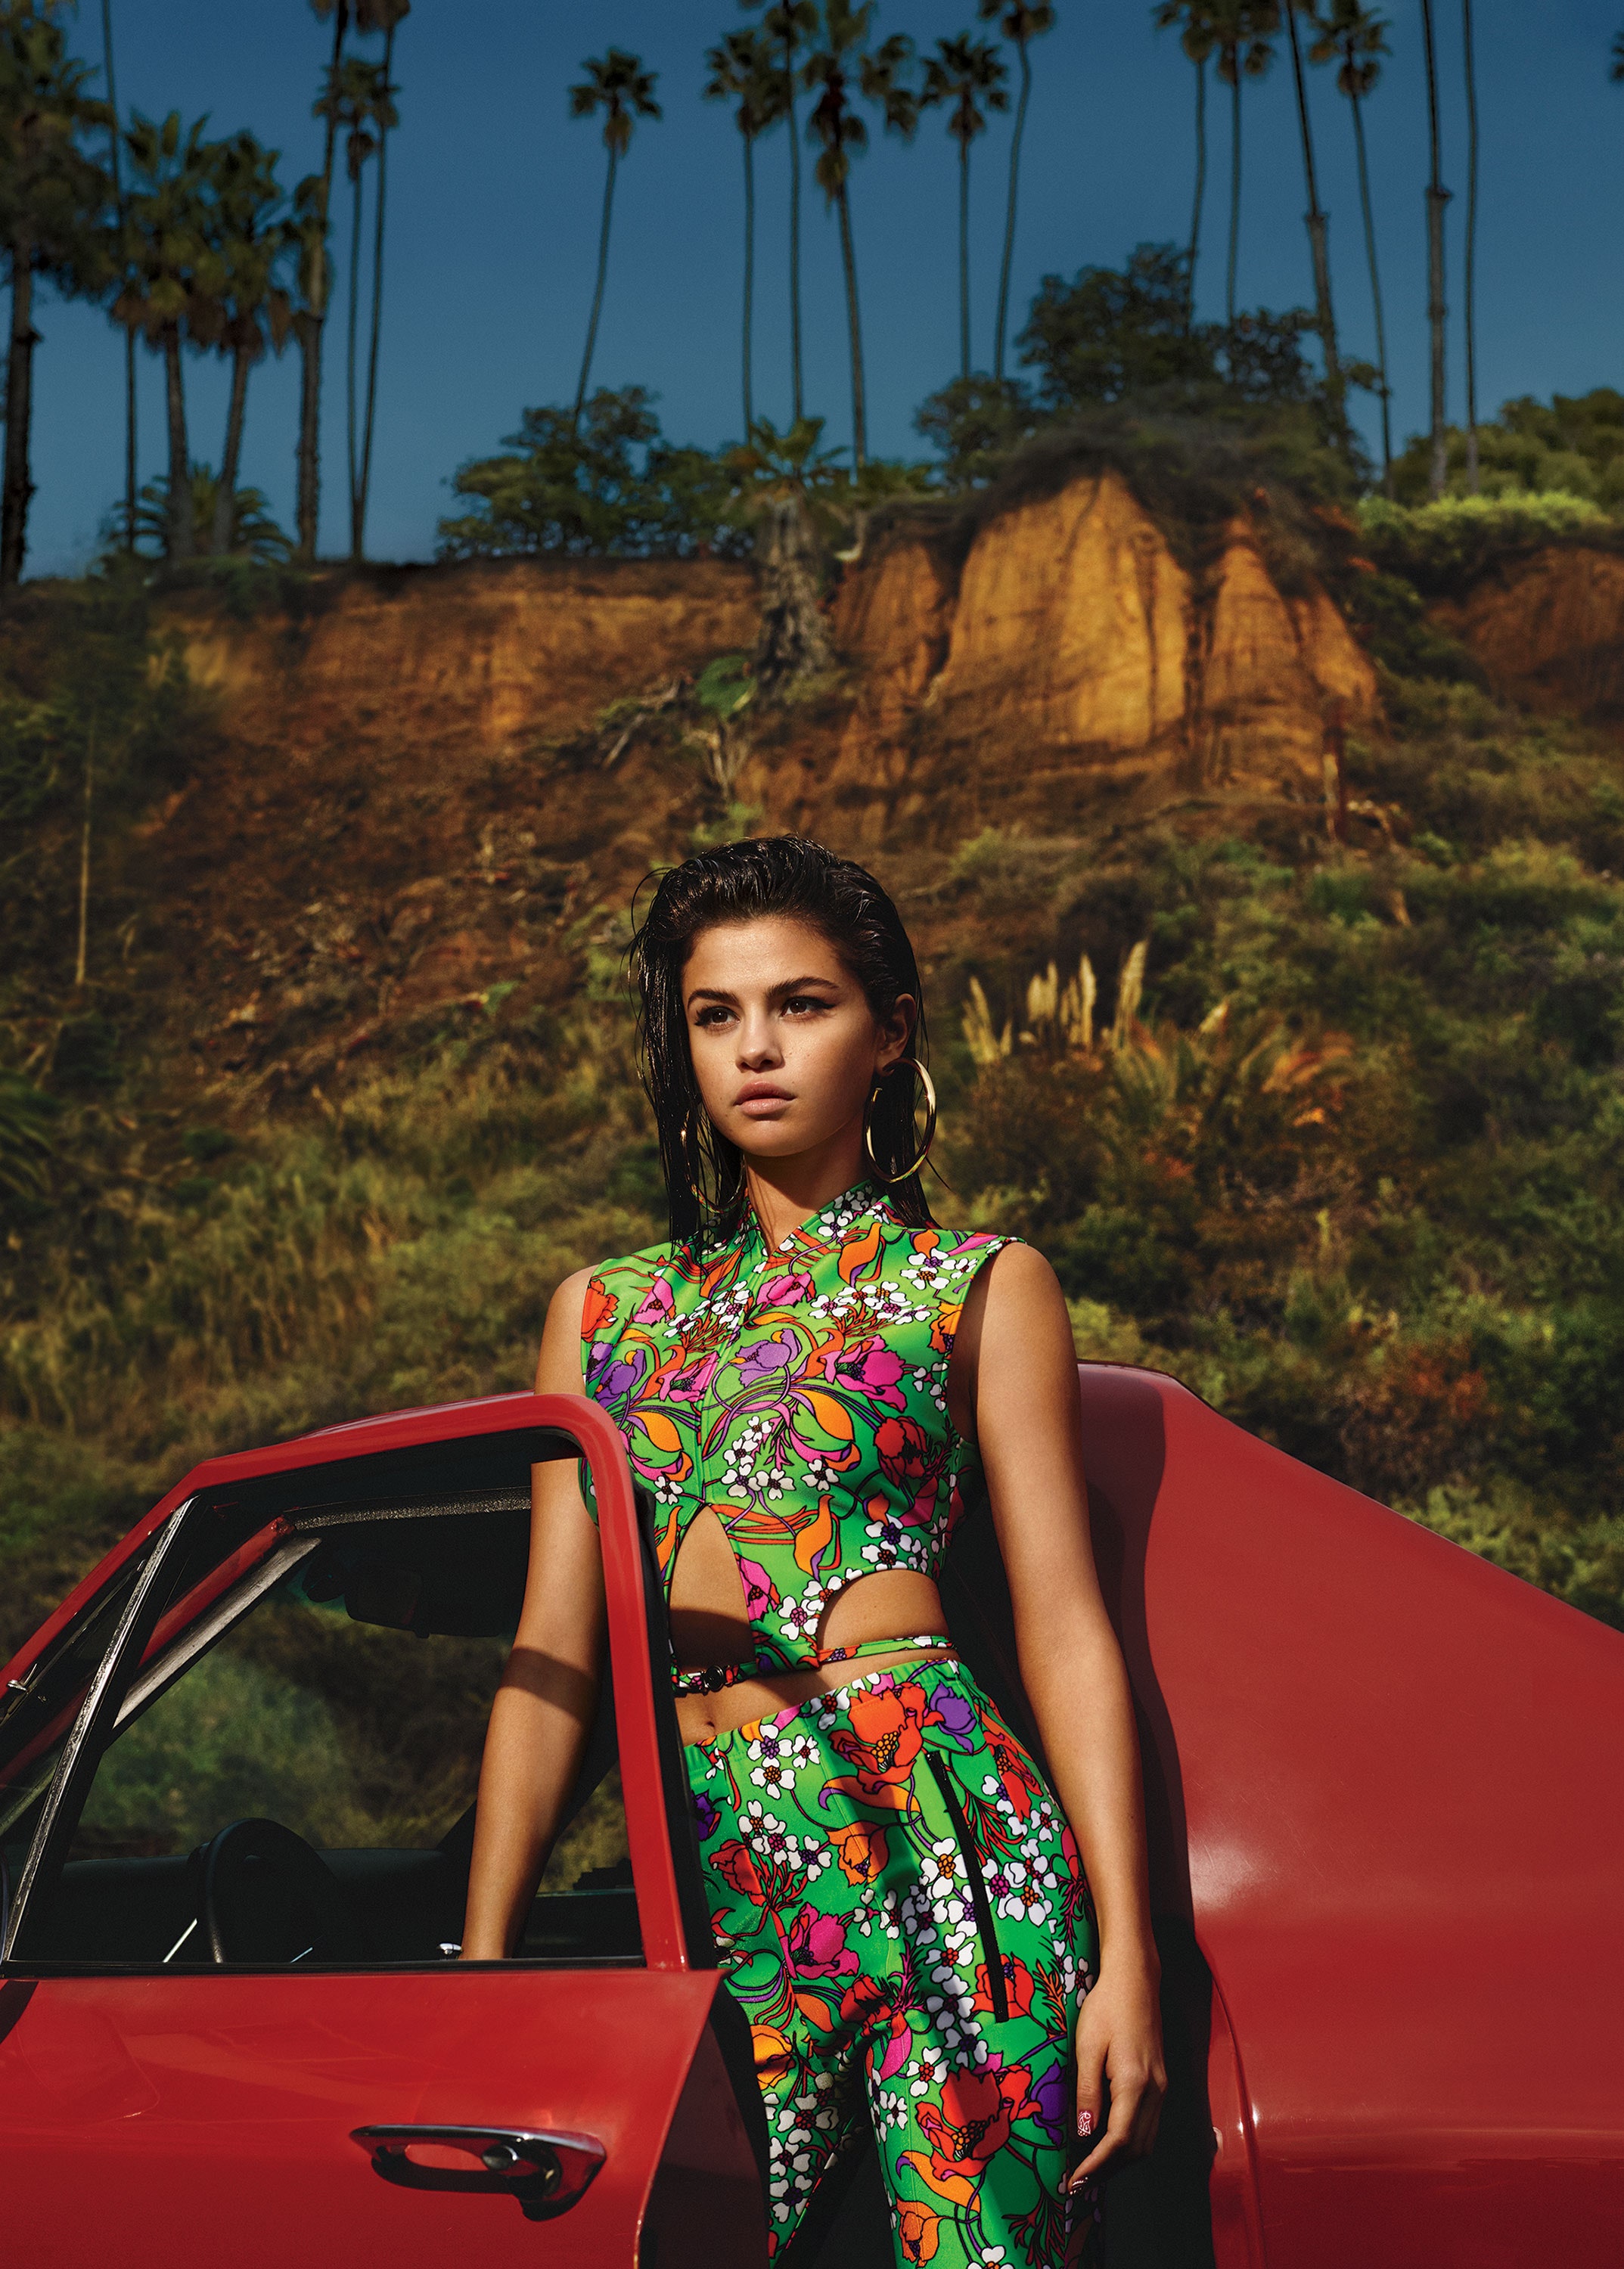 Selena Gomez's Insanely Hot Latest Vogue Photoshoot 2